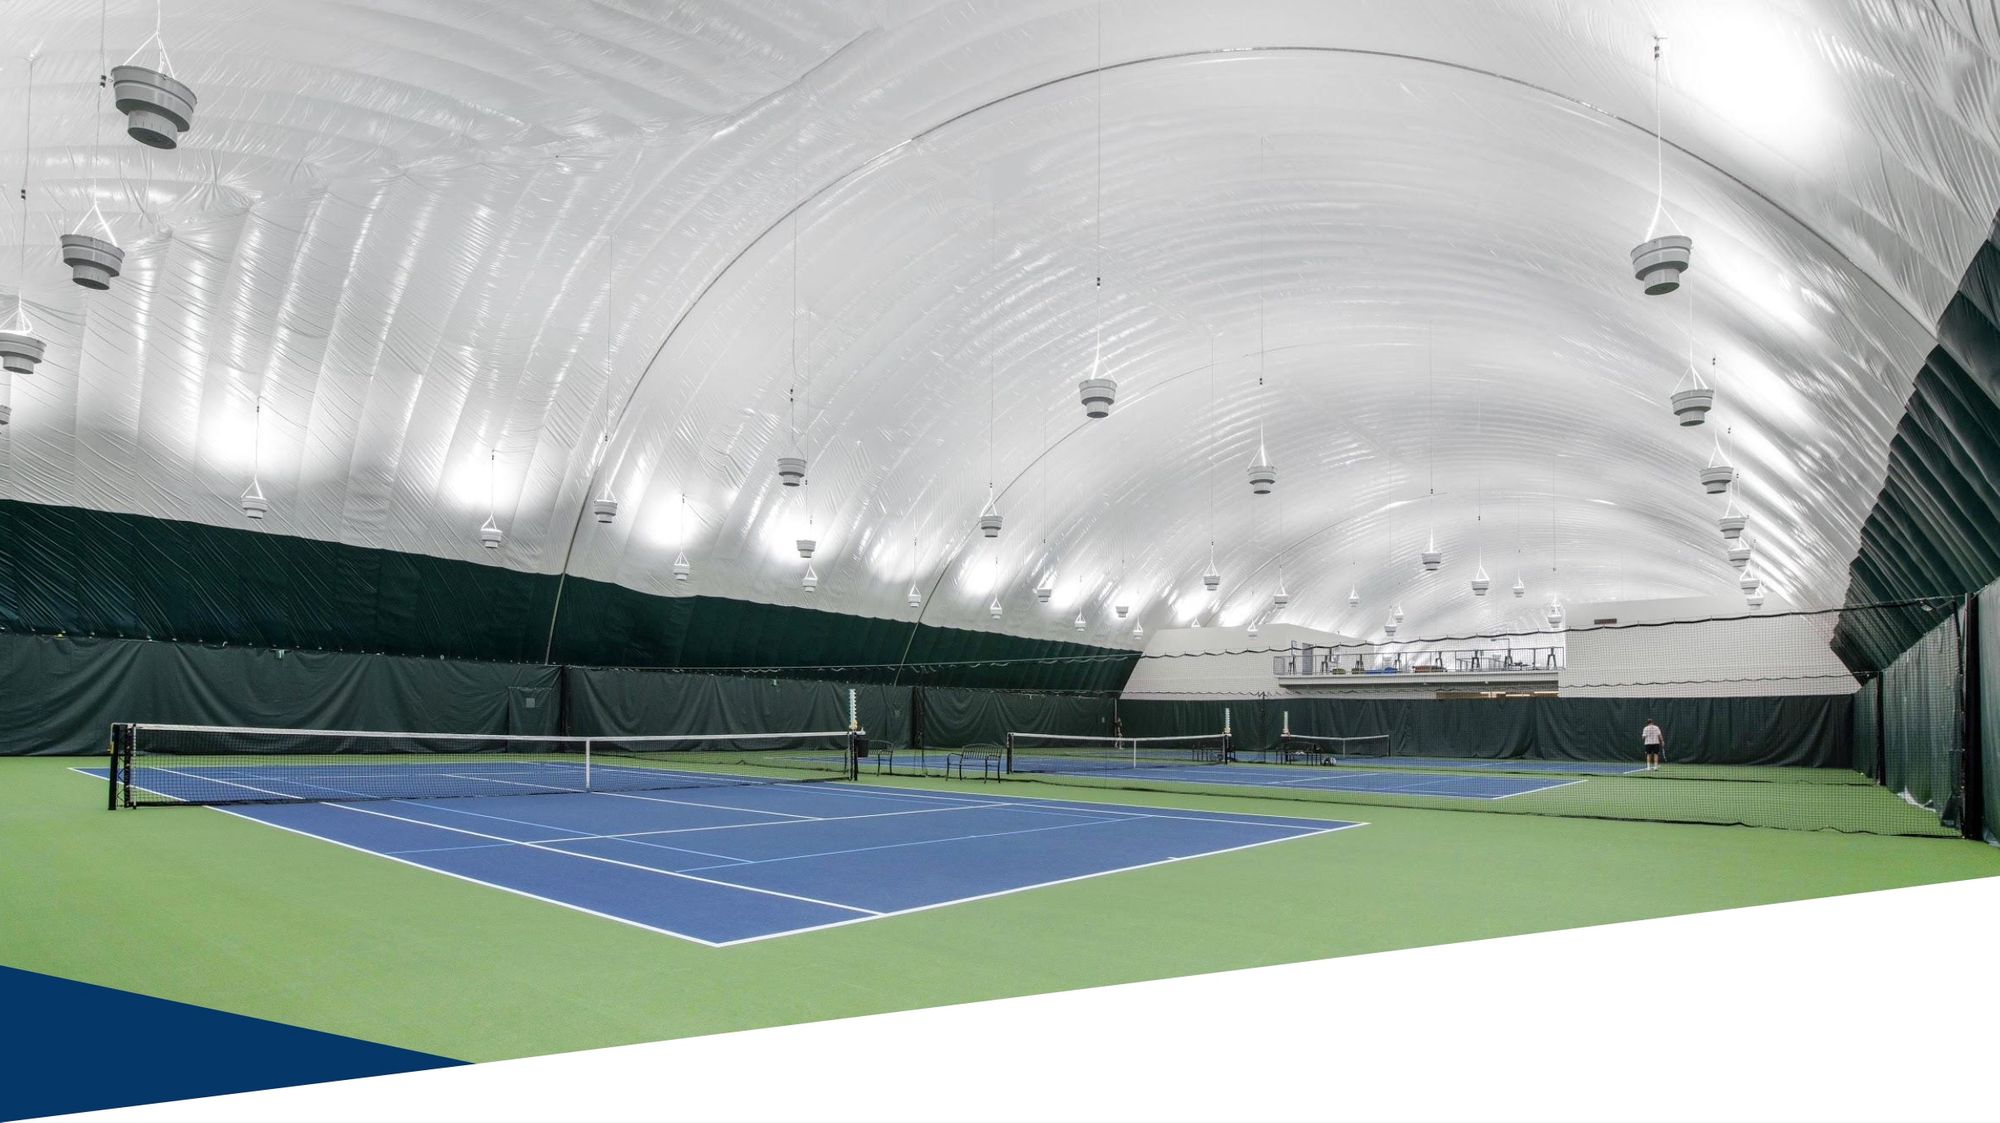 Randy Ross Tennis Center - Randy Ross Tennis Center